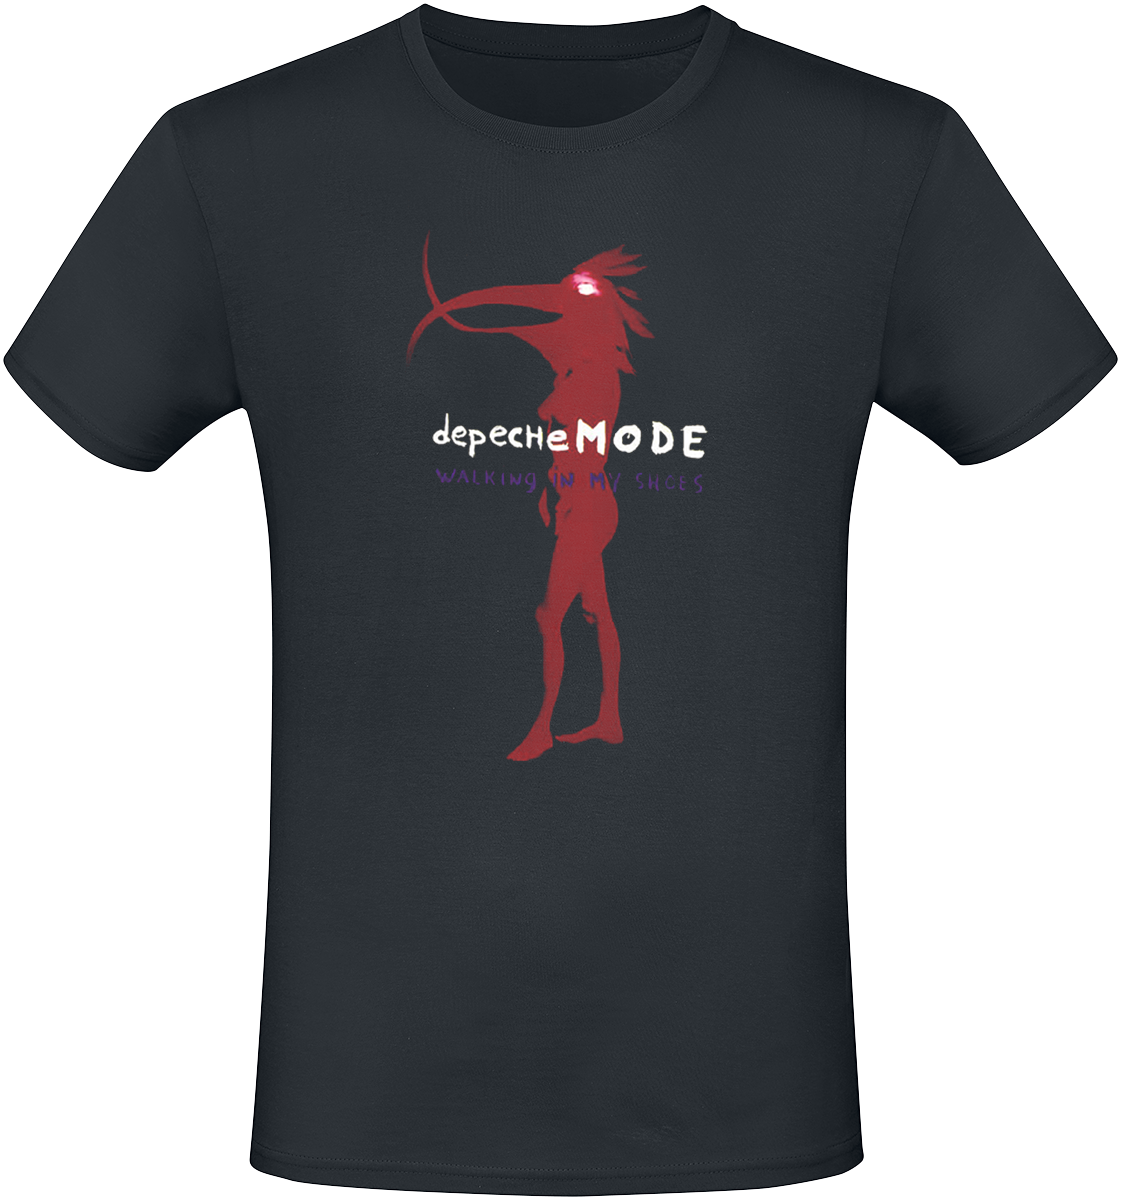 Depeche Mode - Walking In My Shoes - T-Shirt - schwarz